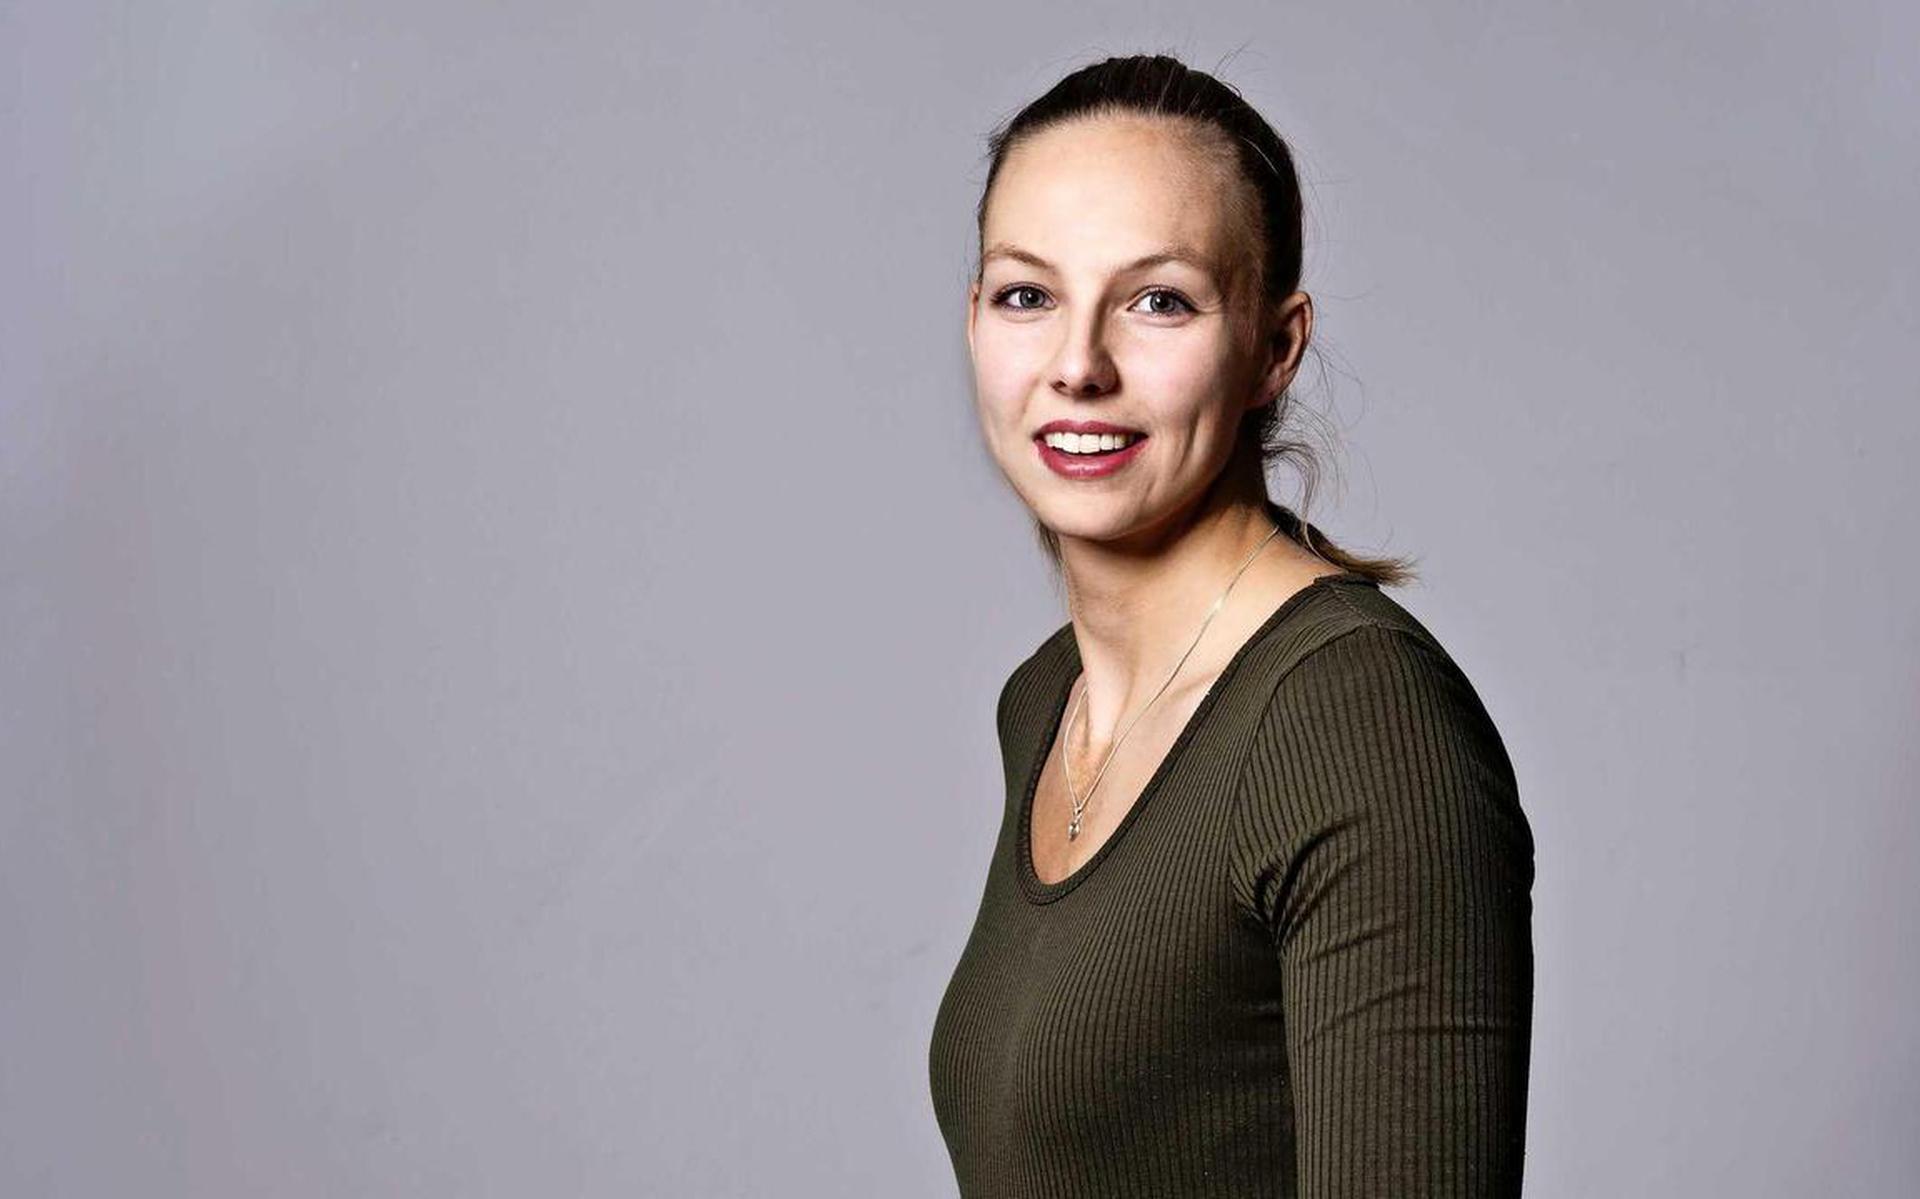 La giocatrice di beach volley Katja Stam di Klingdijk: “Adoro l’immagine sexy del mio sport”